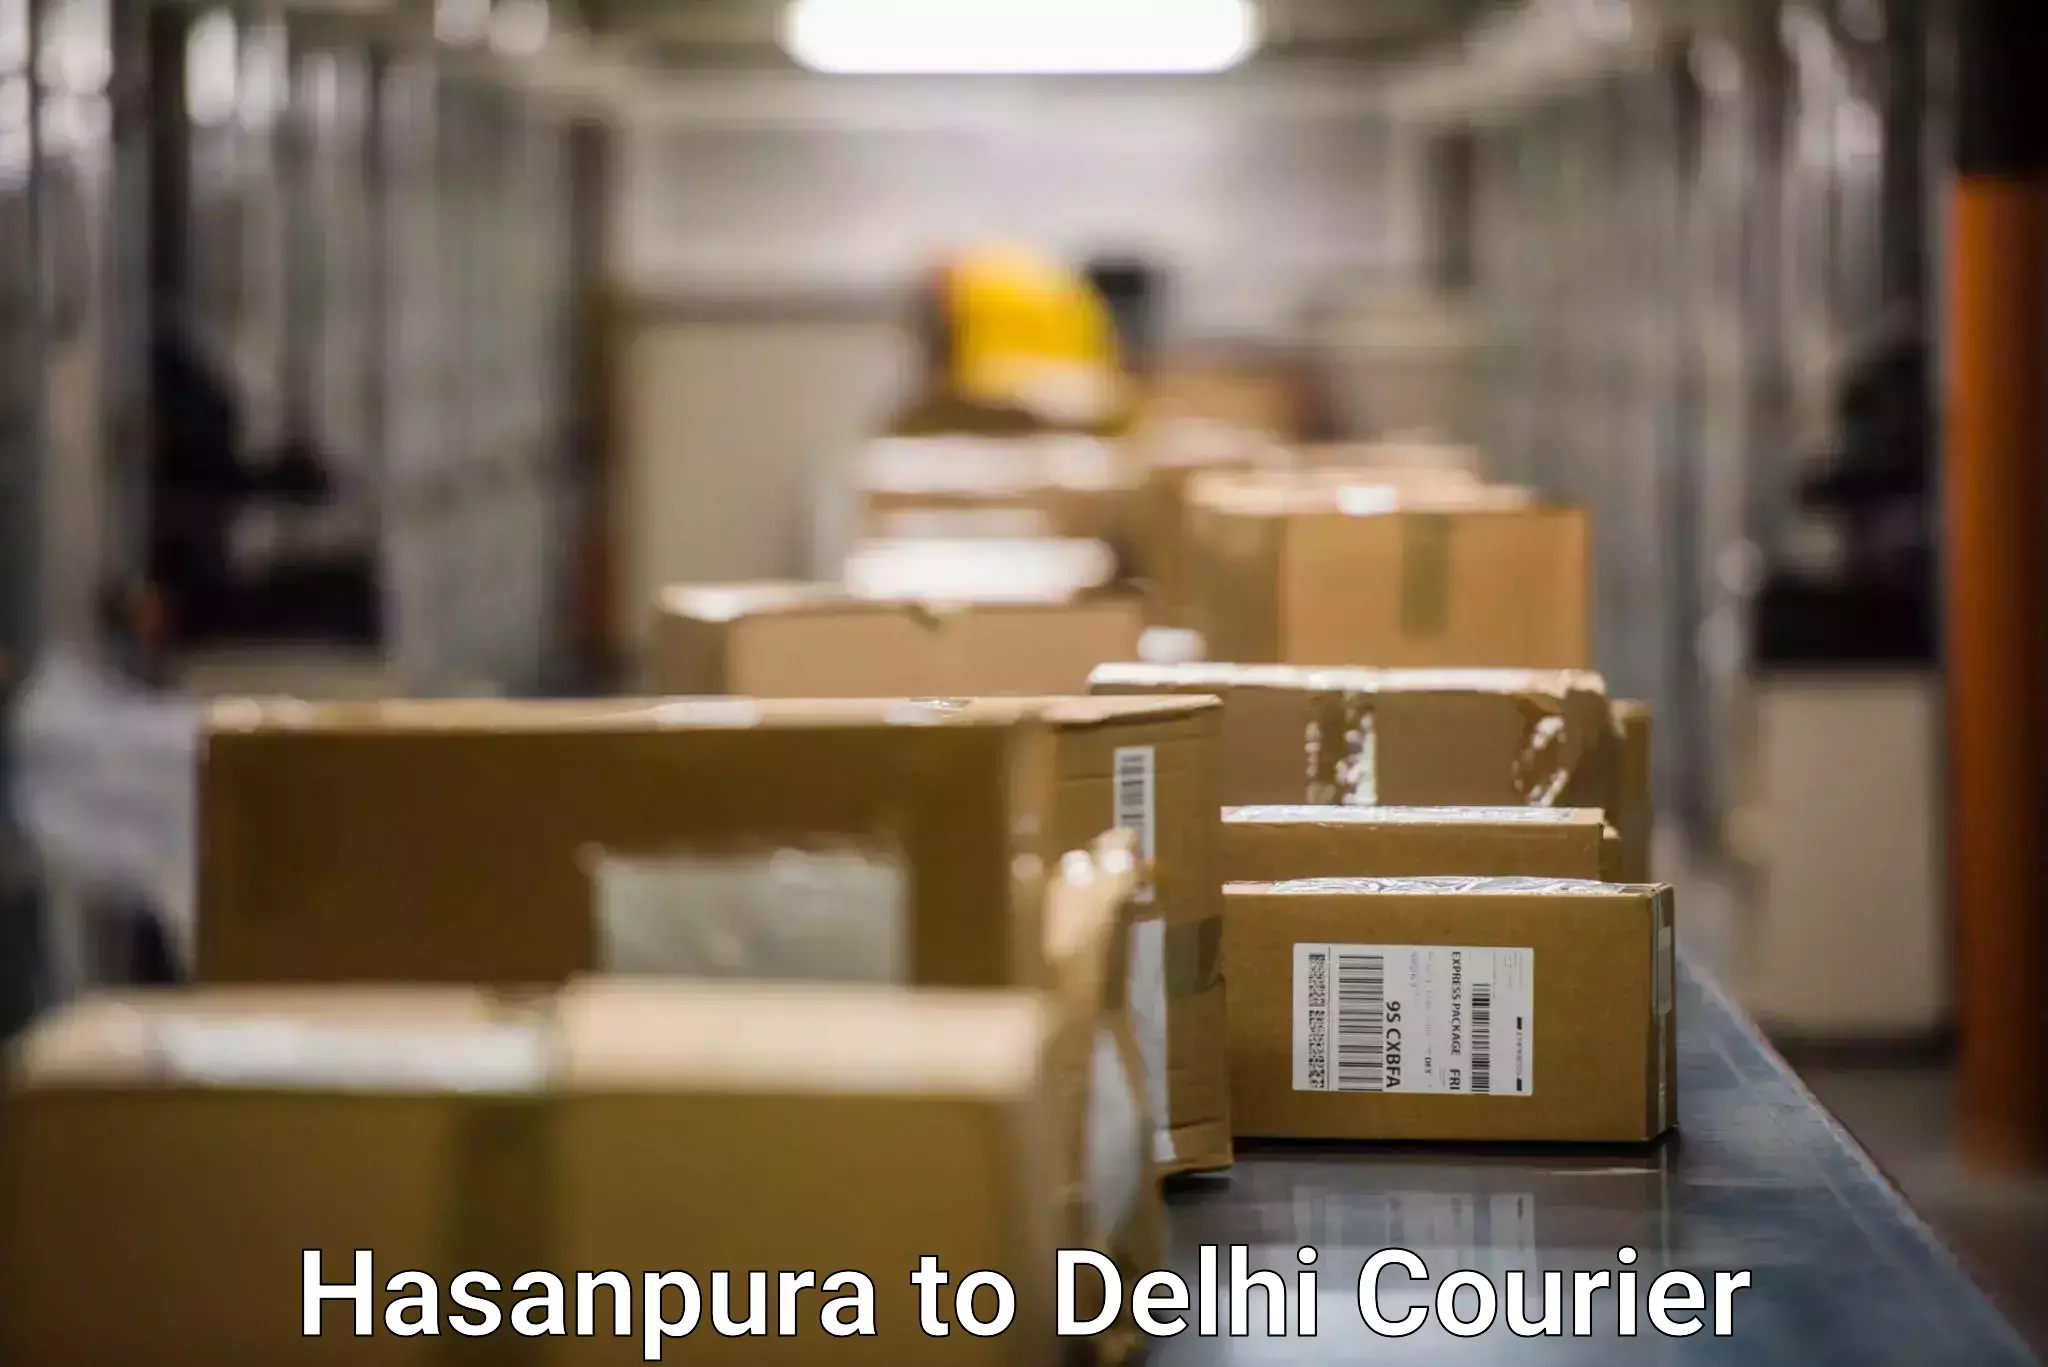 Express logistics service Hasanpura to Delhi